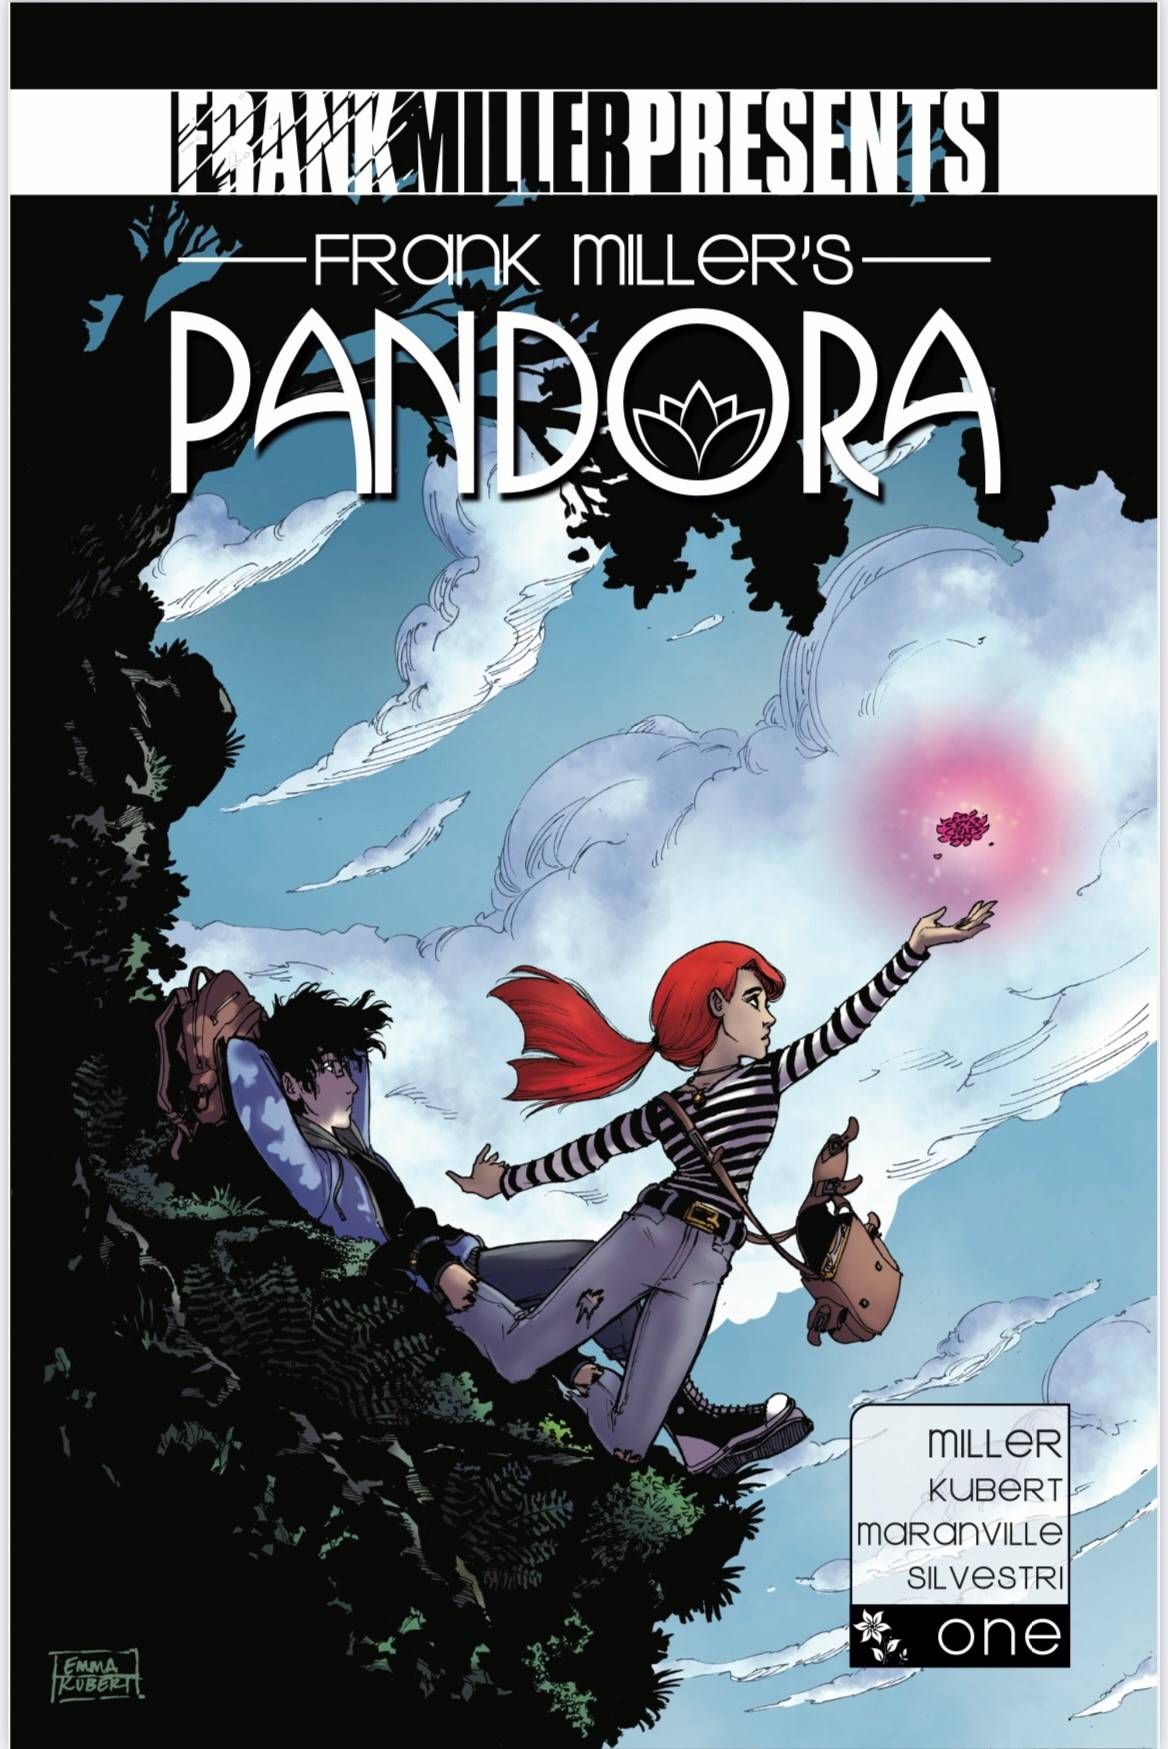 Frank Miller's Pandora Comic